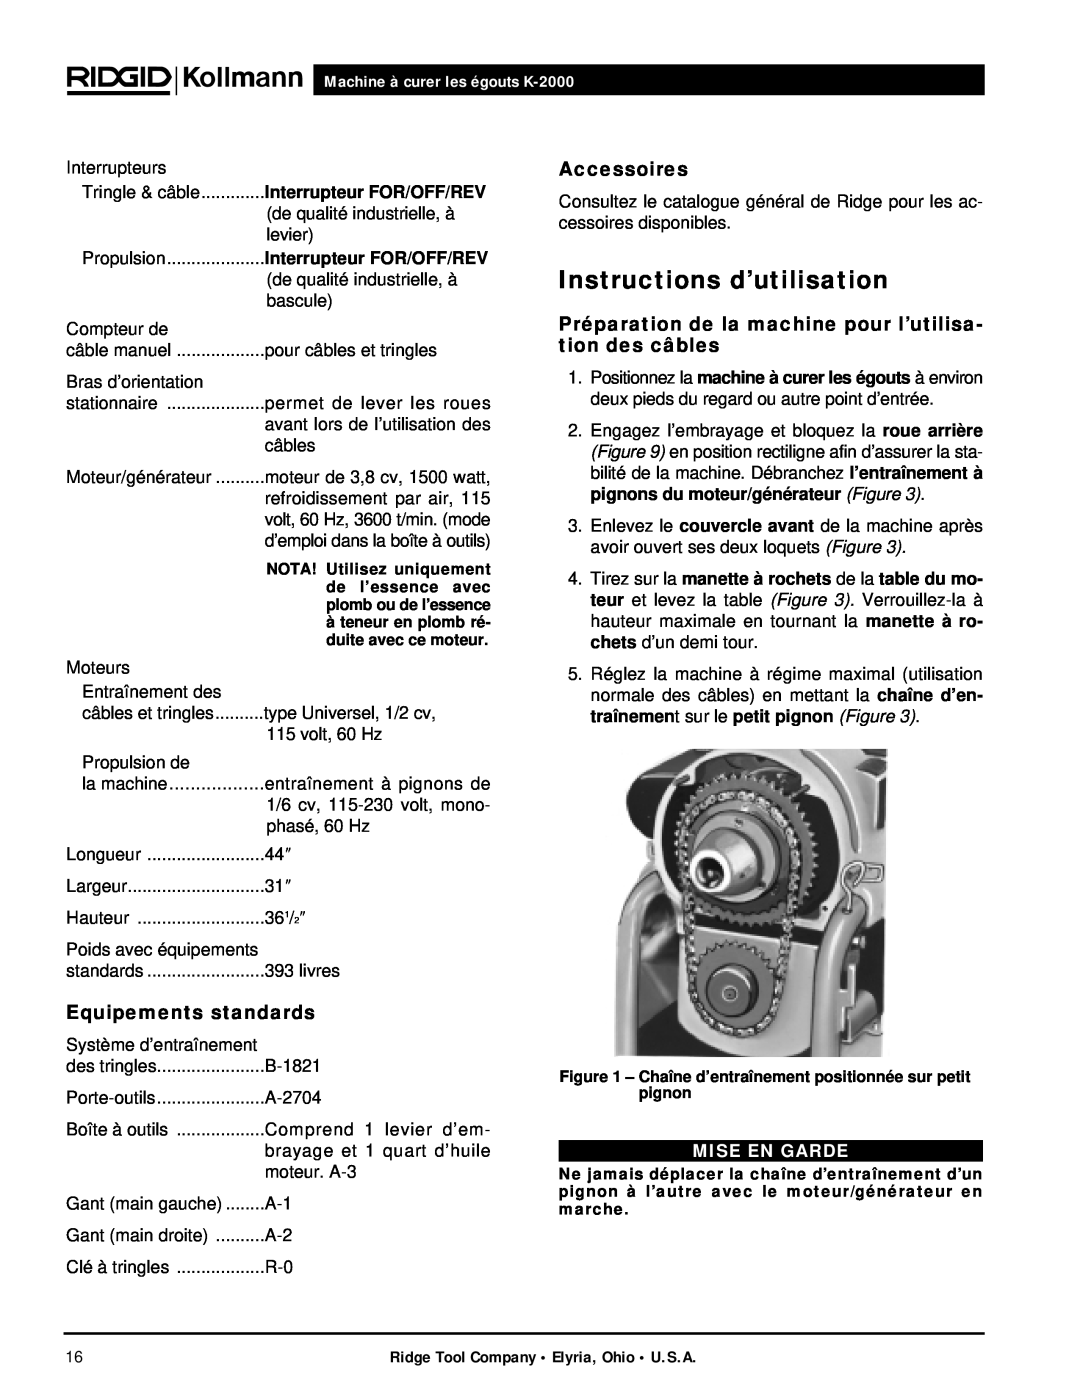 RIDGID Instructions d’utilisation, Accessoires, Equipements standards, Machine à curer les égouts K-2000, Mise En Garde 